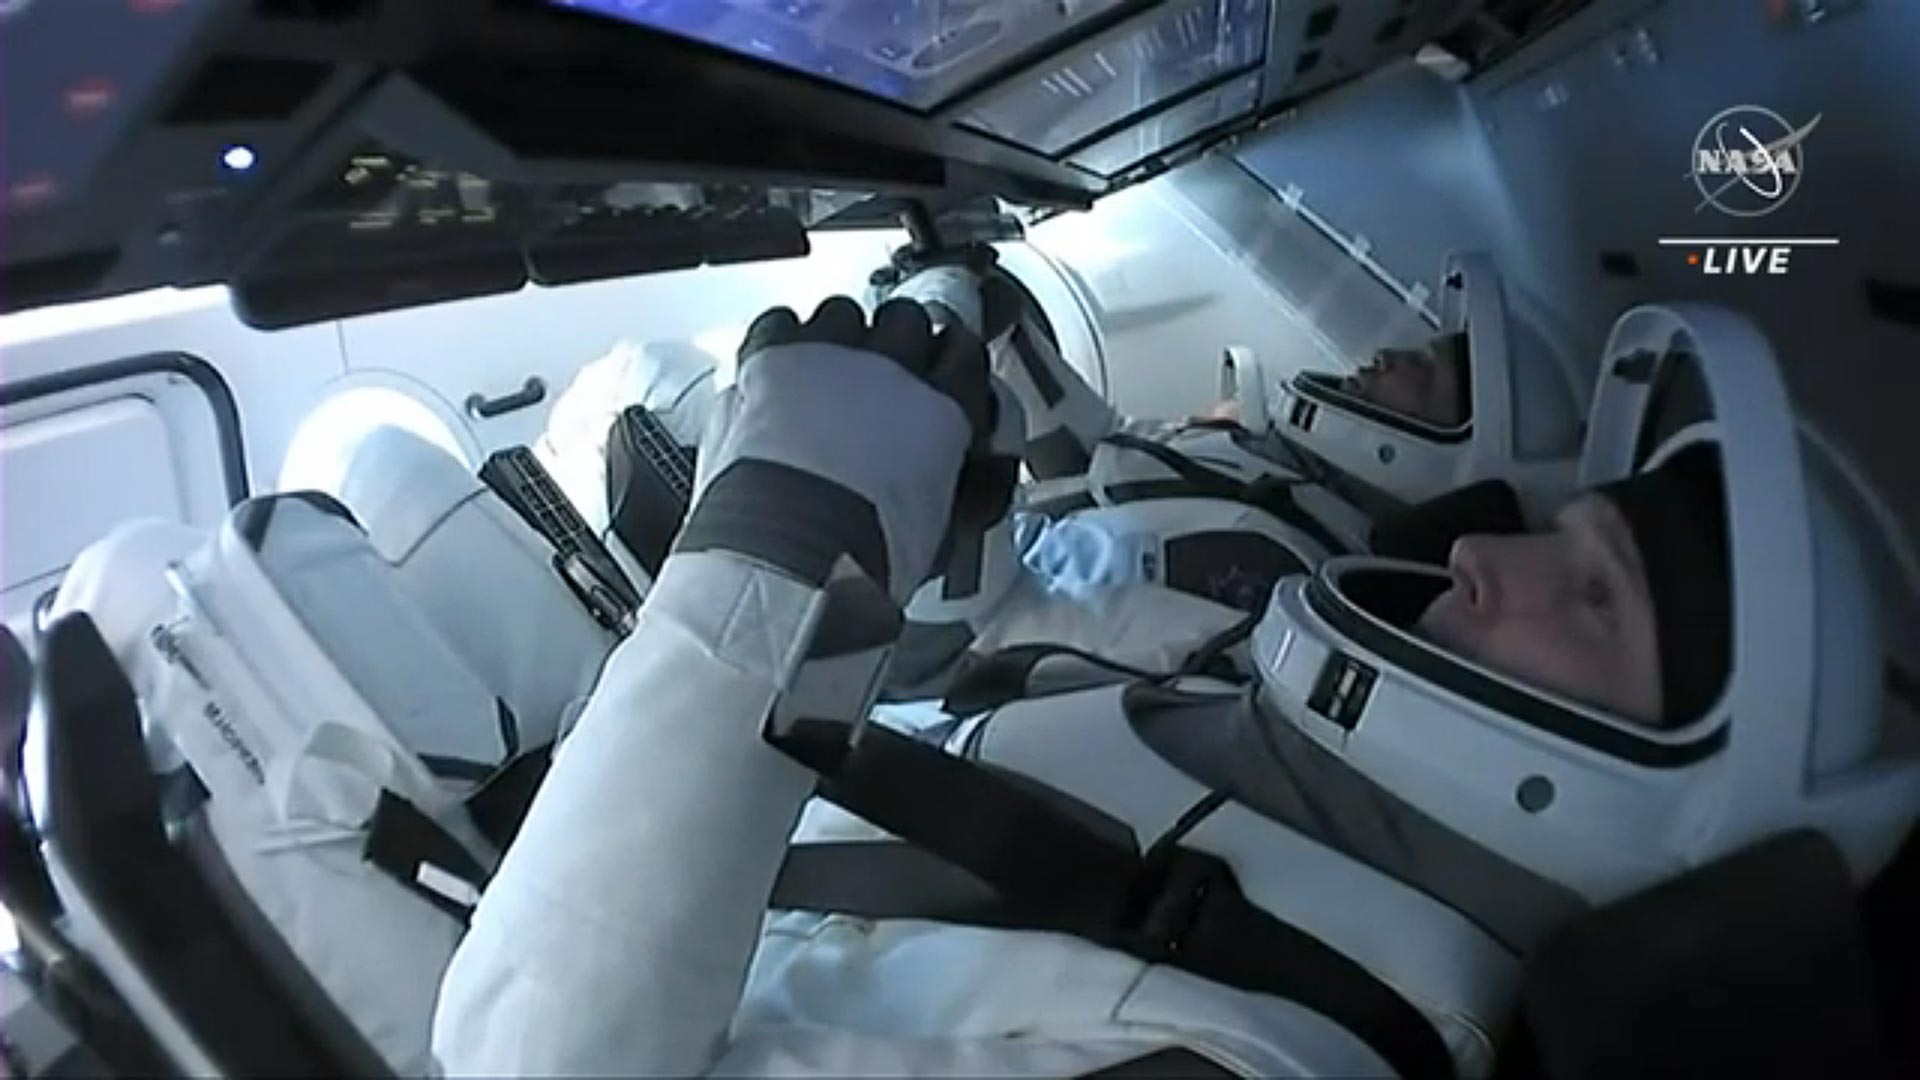 â€œI Felt Really Heavy!â€ â€“ NASAâ€™s SpaceX Crew-1 Astronauts Discuss Their Historic Mission and Return to Earth - SciTechDaily